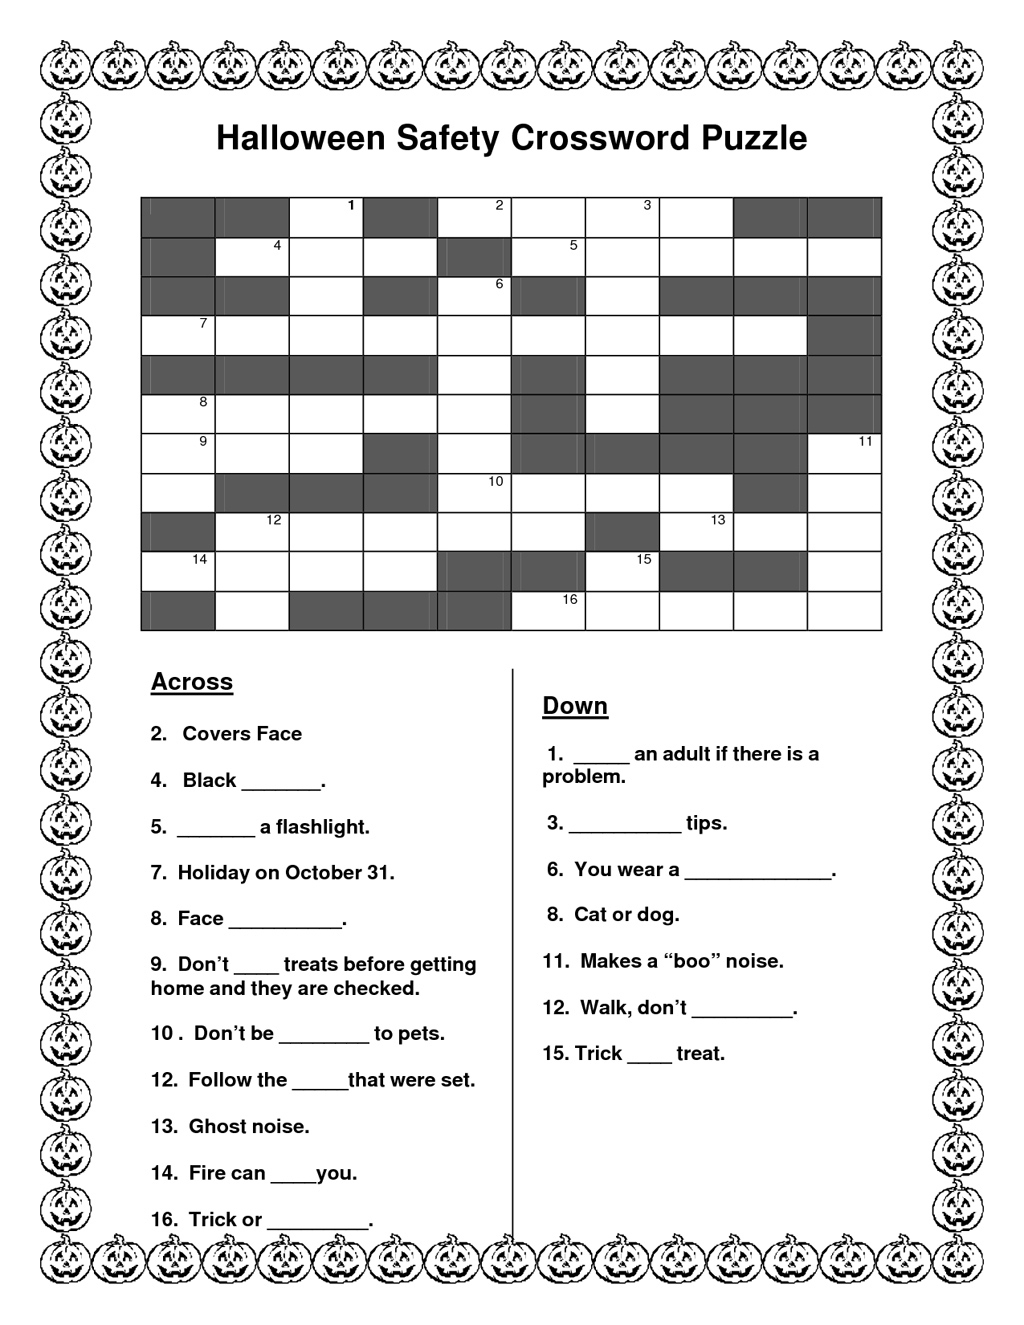 Crosswords Printable Halloween Crossword Puzzle Puzzles - Halloween Crossword Printable Free